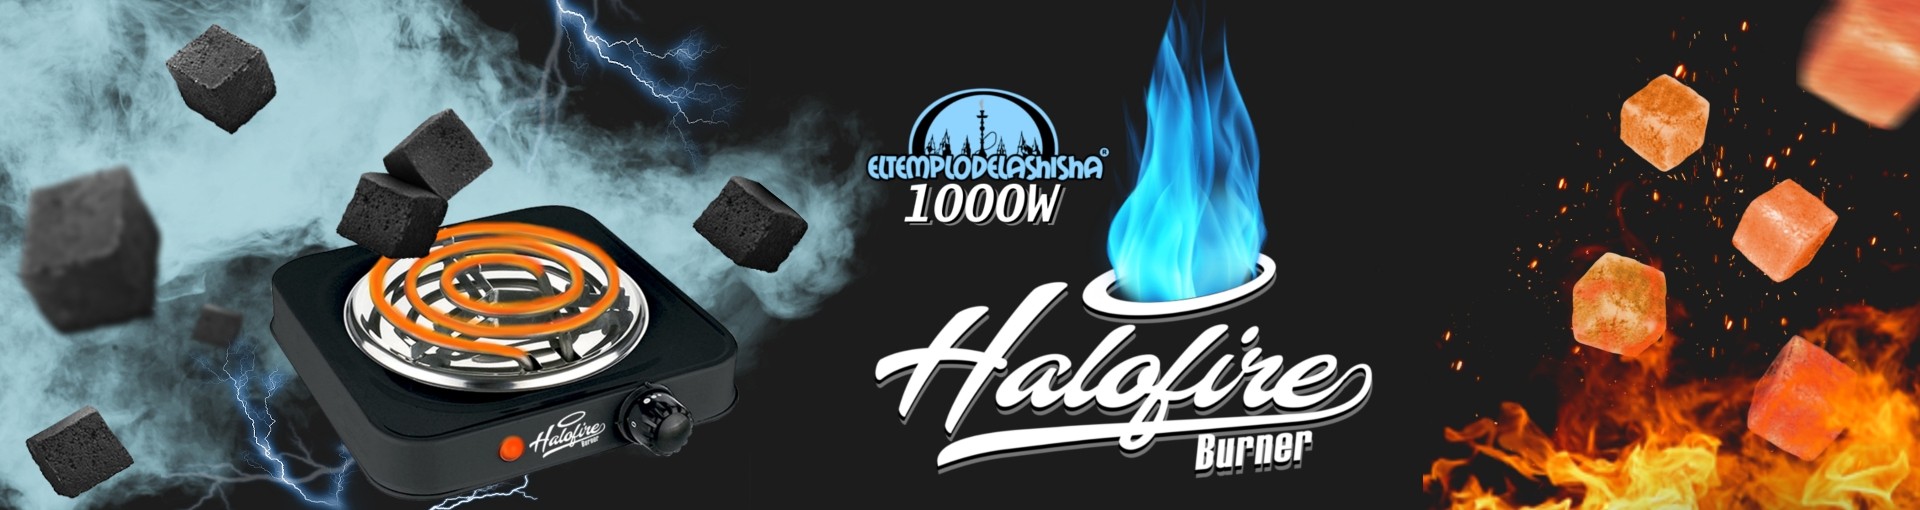 Hornillo Halofire Burn 14,95€